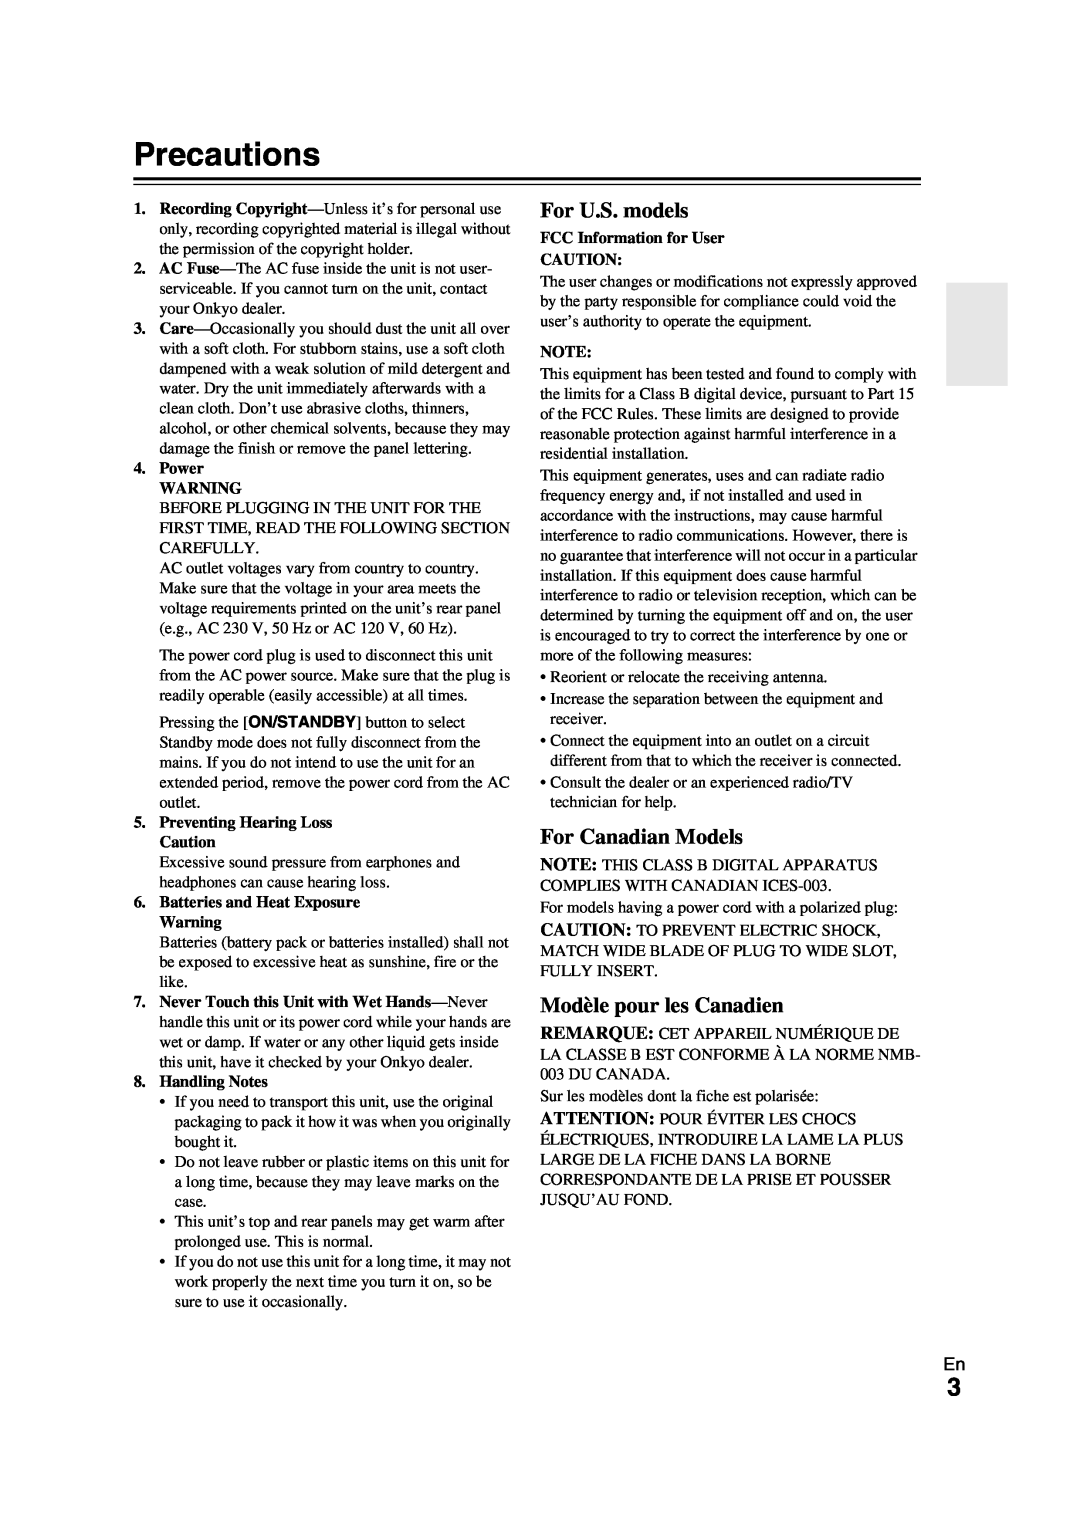 Onkyo TX-NR709 instruction manual Precautions, For U.S. models, For Canadian Models, Modèle pour les Canadien 